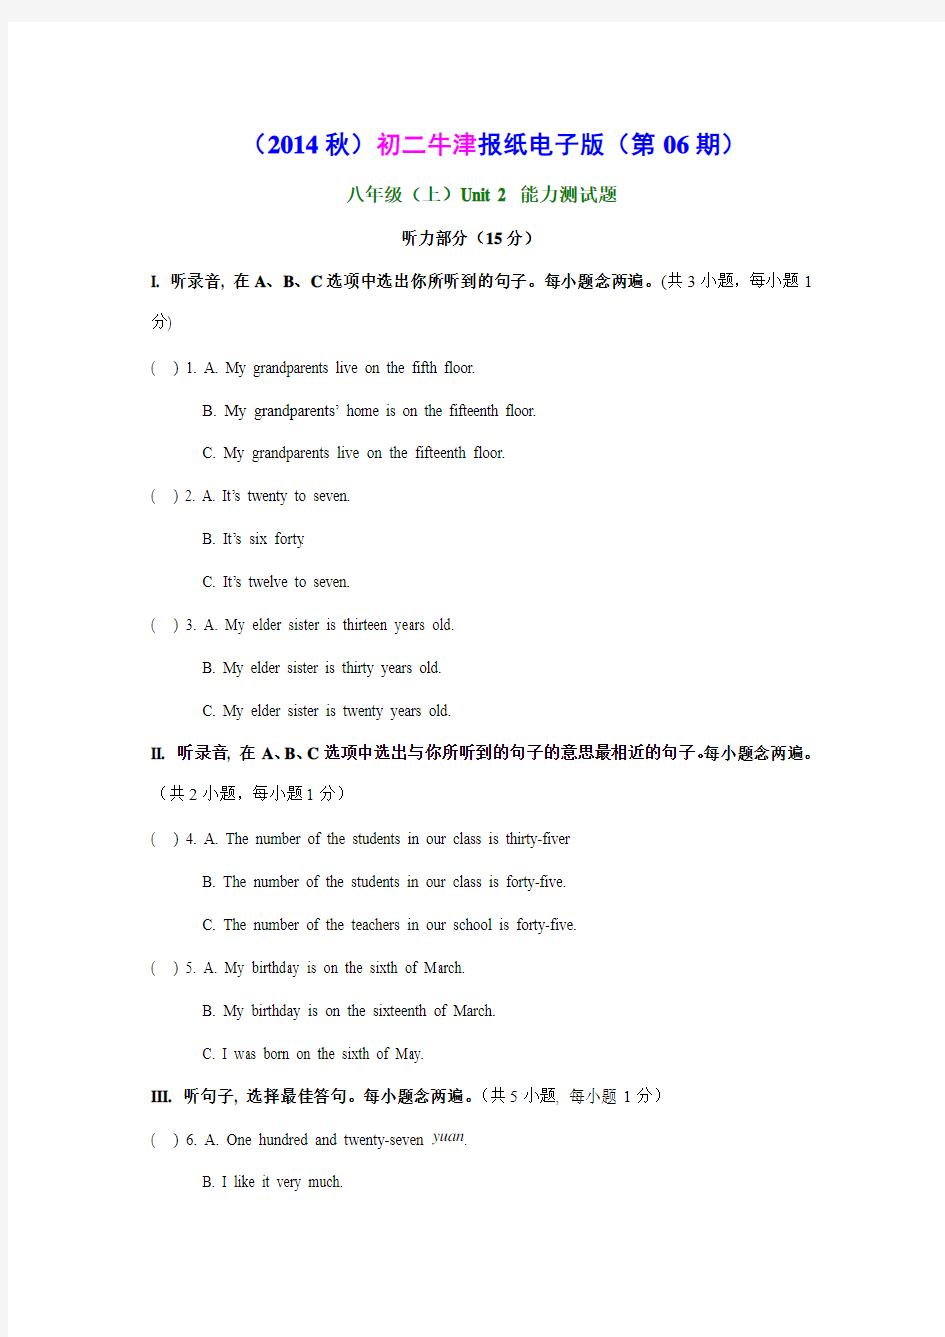 (2014秋)八年级报纸电子版·牛津深圳版(第06期)